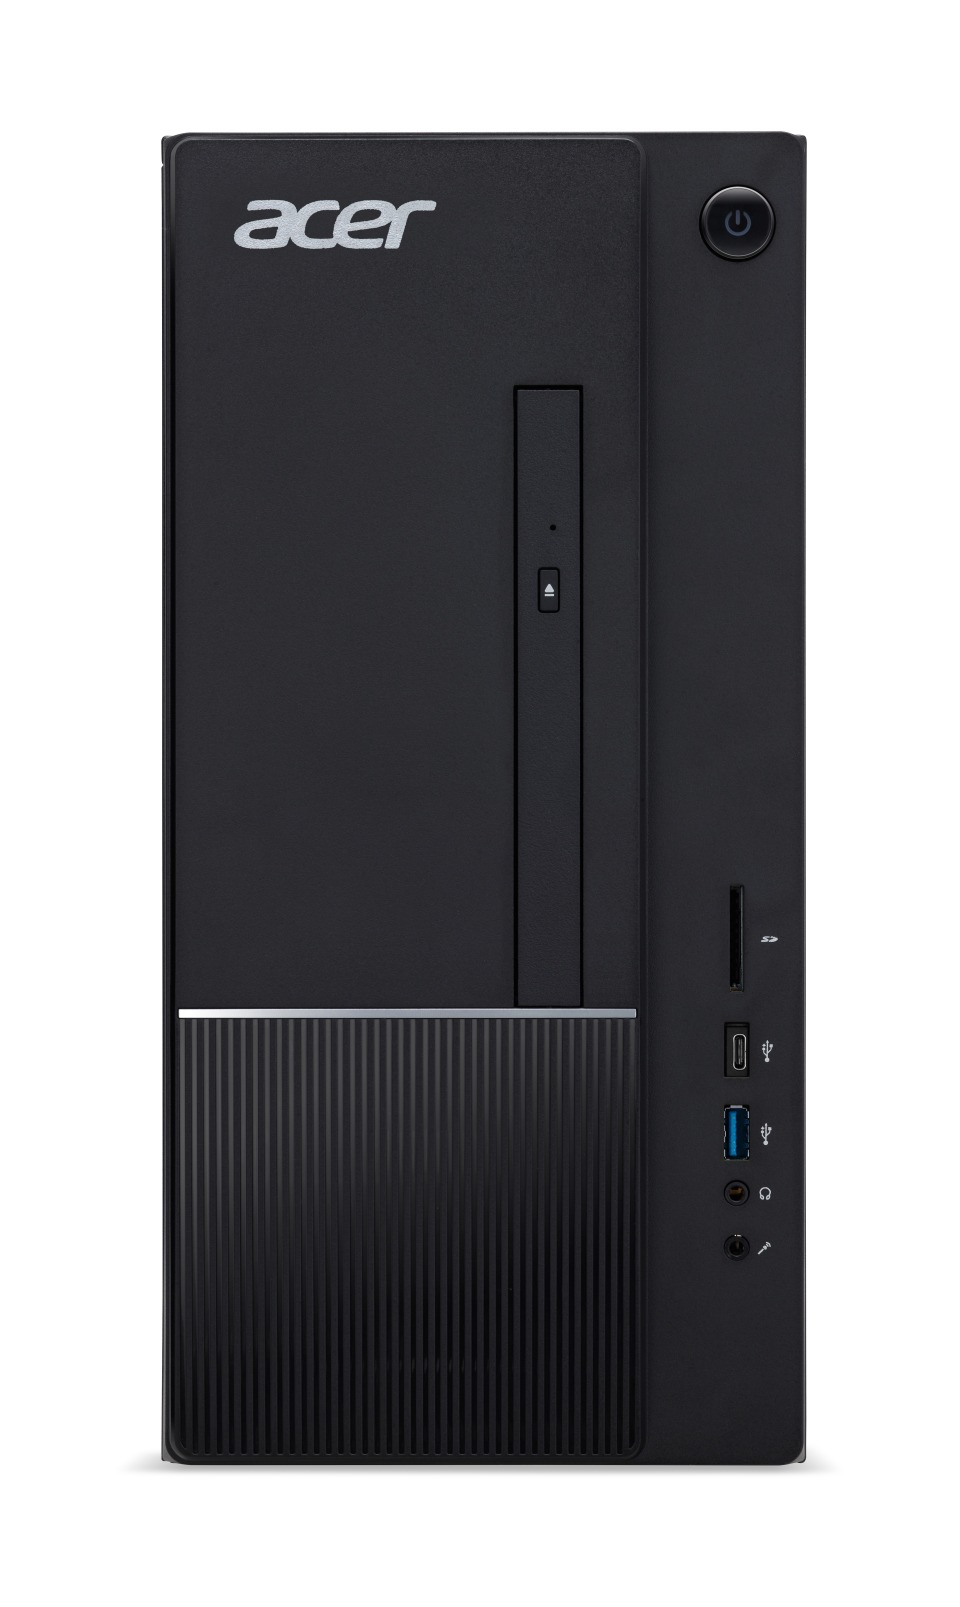 Acer TC-100 - AMD e1-2500.